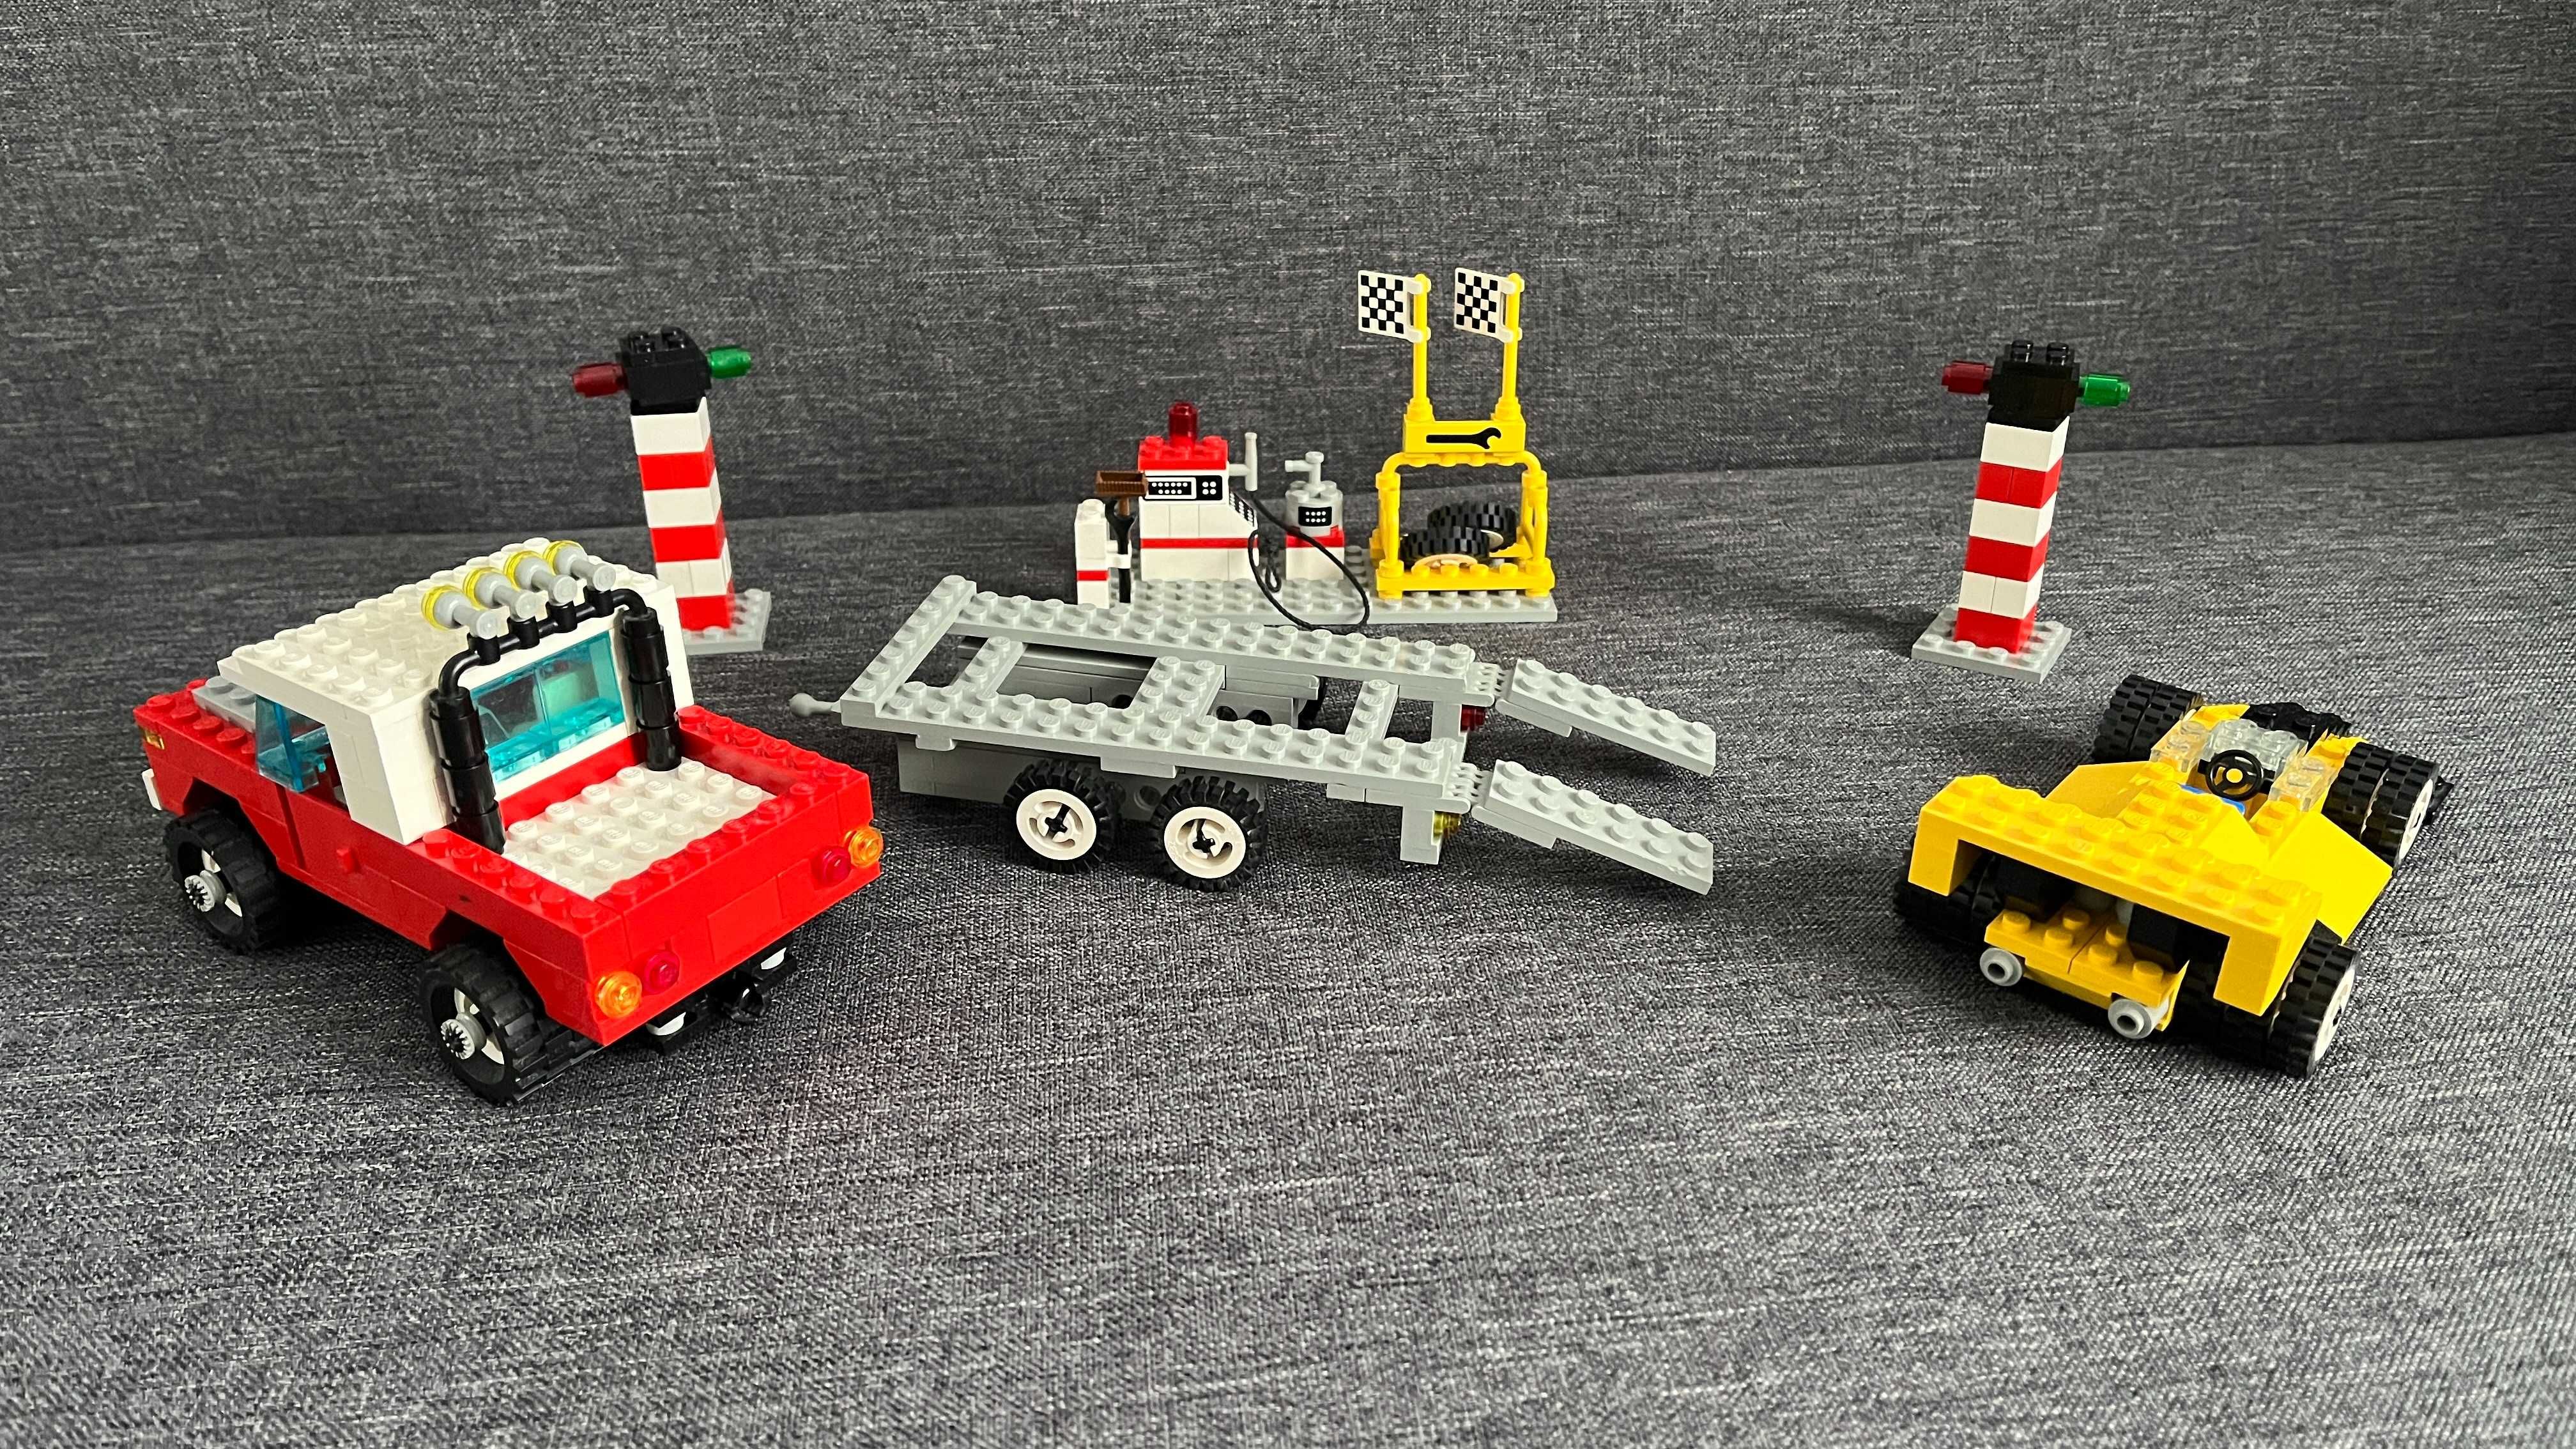 Lego Basic - 715 - Basic Building Set - an 1990